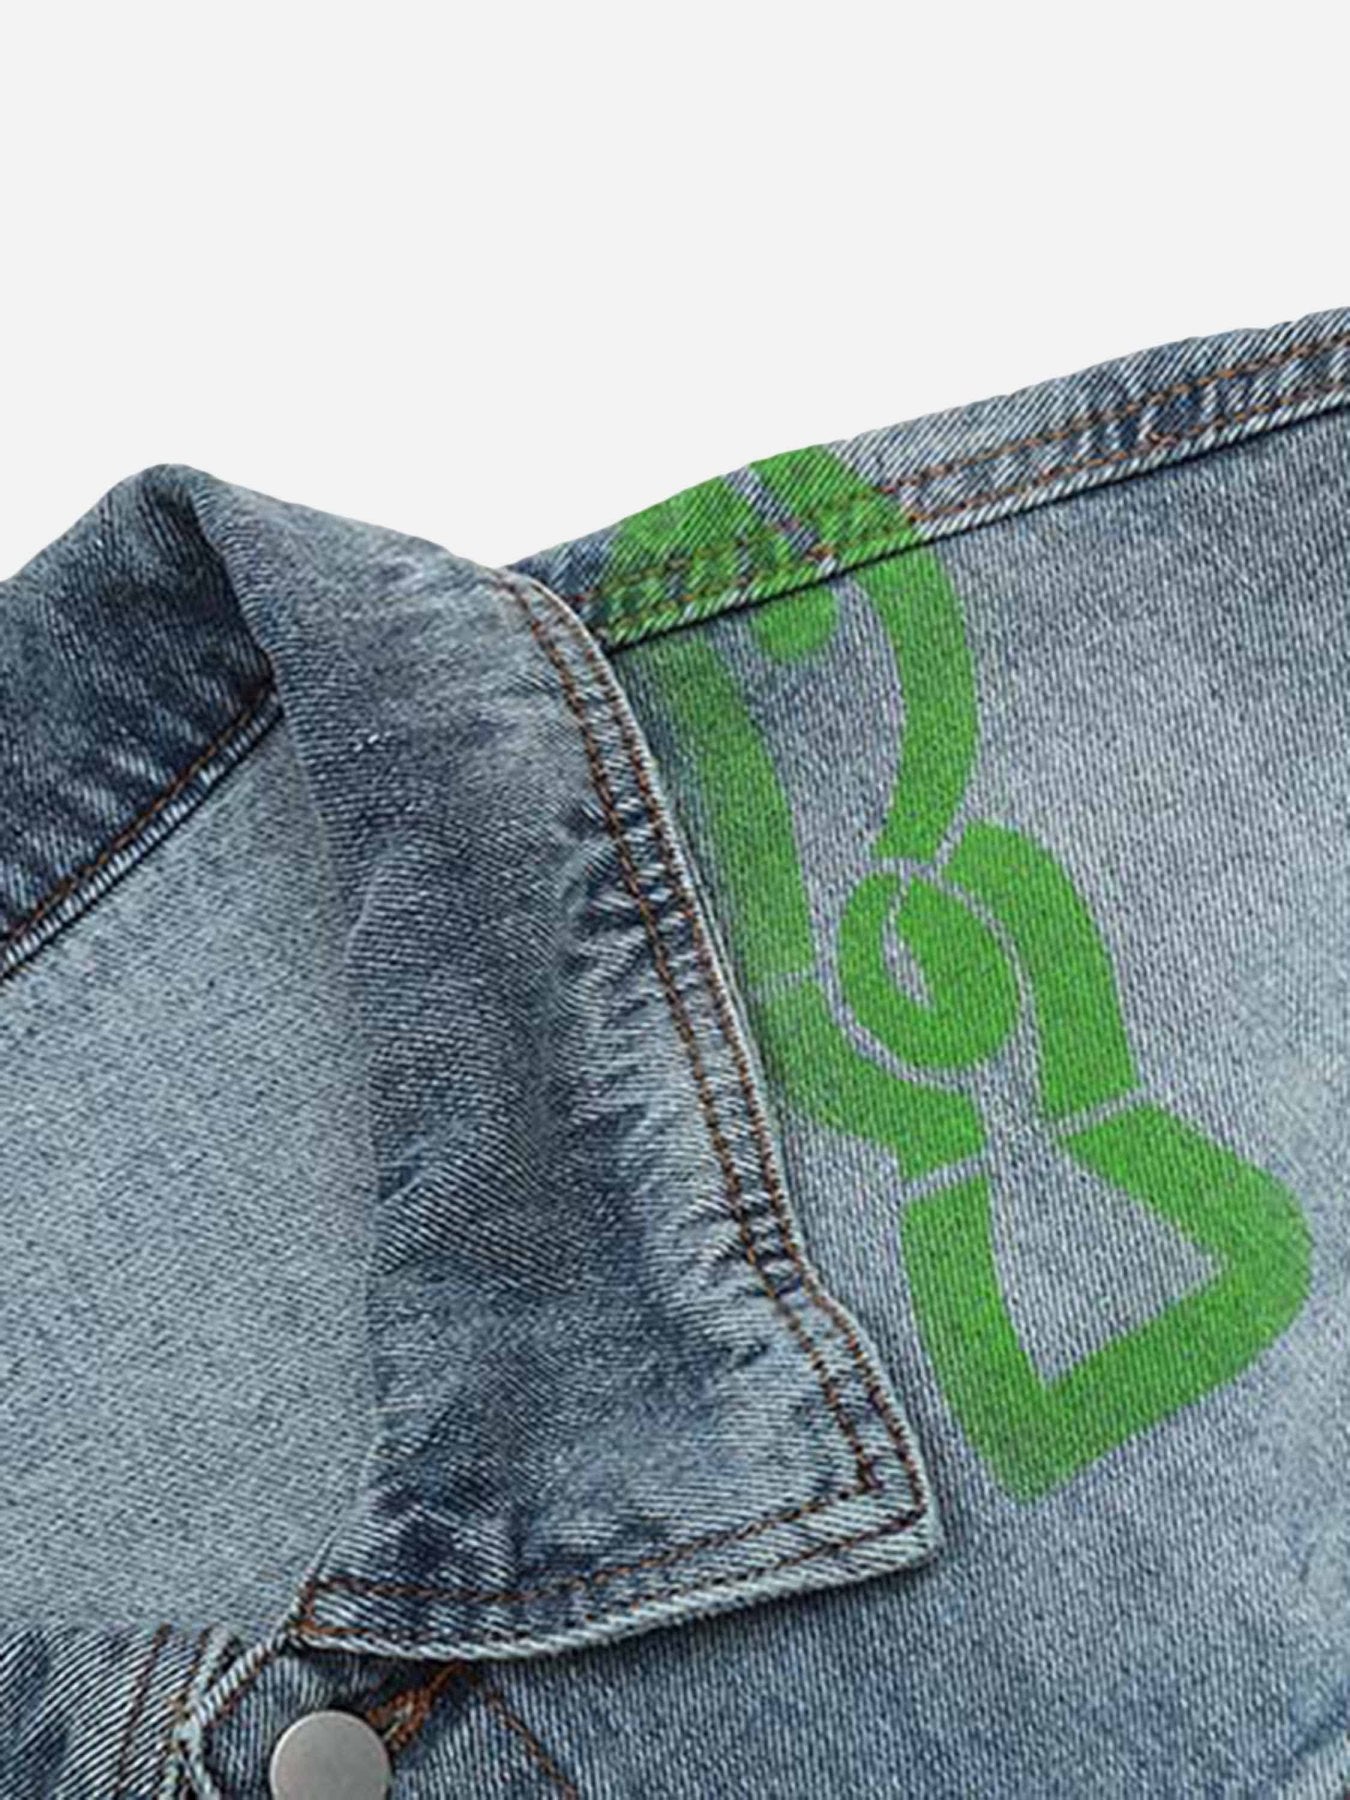 The Supermade Vintage Design Washed Denim Jacket